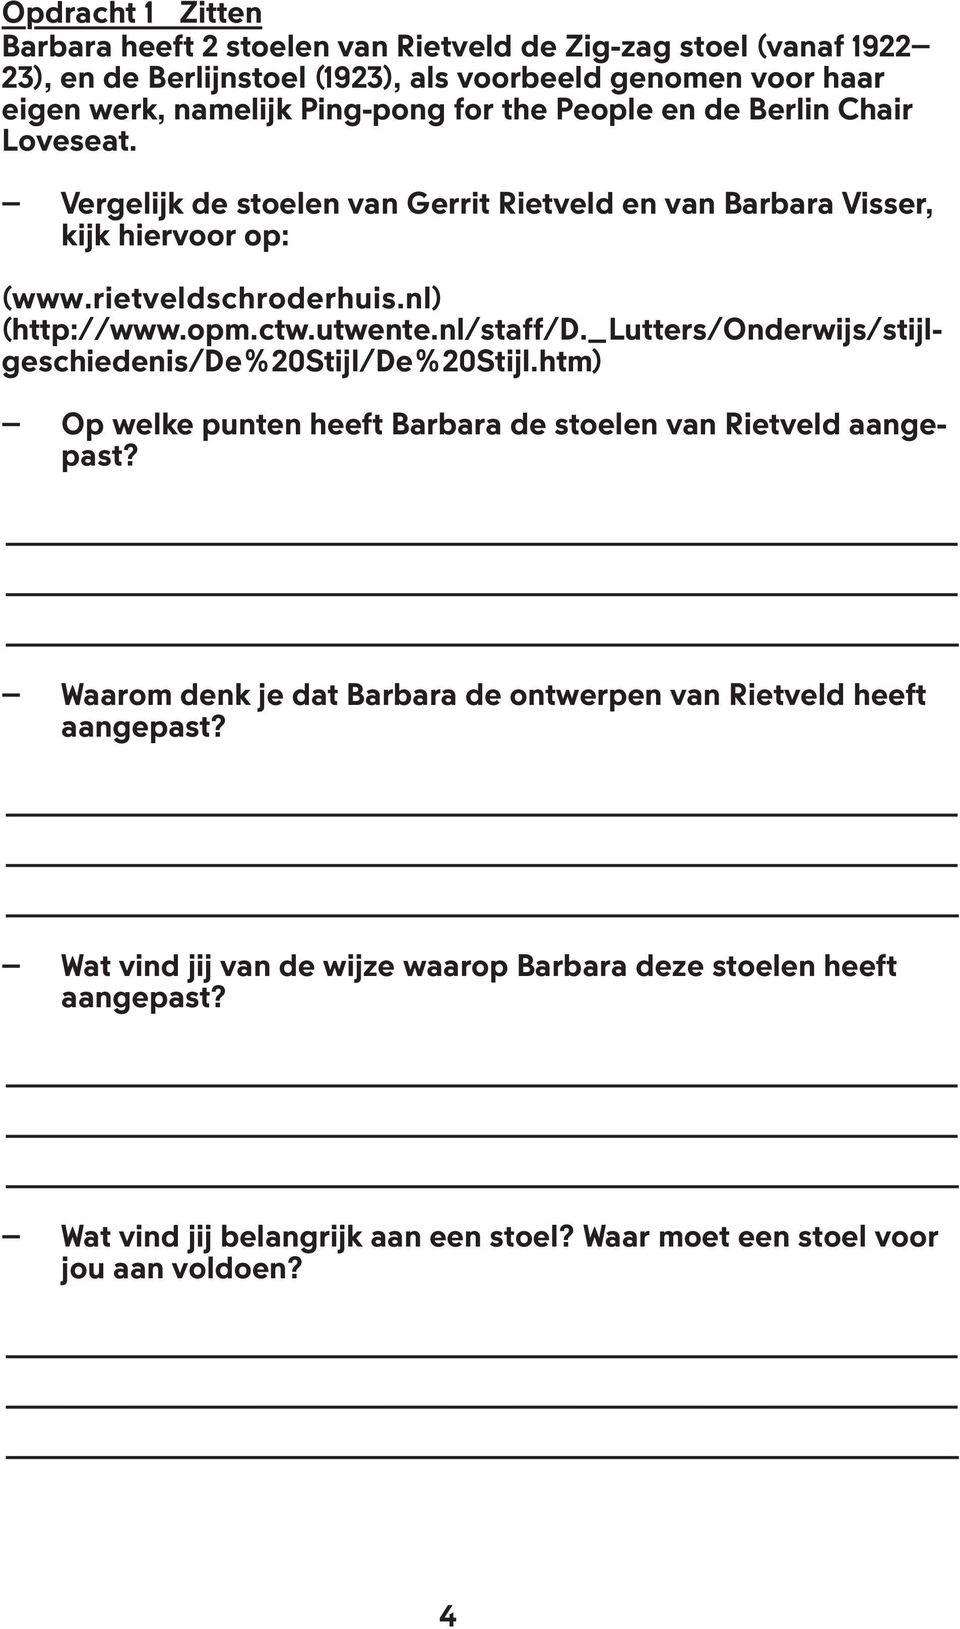 utwente.nl/staff/d._lutters/onderwijs/stijlgeschiedenis/de%20stijl/de%20stijl.htm) Op welke punten heeft Barbara de stoelen van Rietveld aangepast?